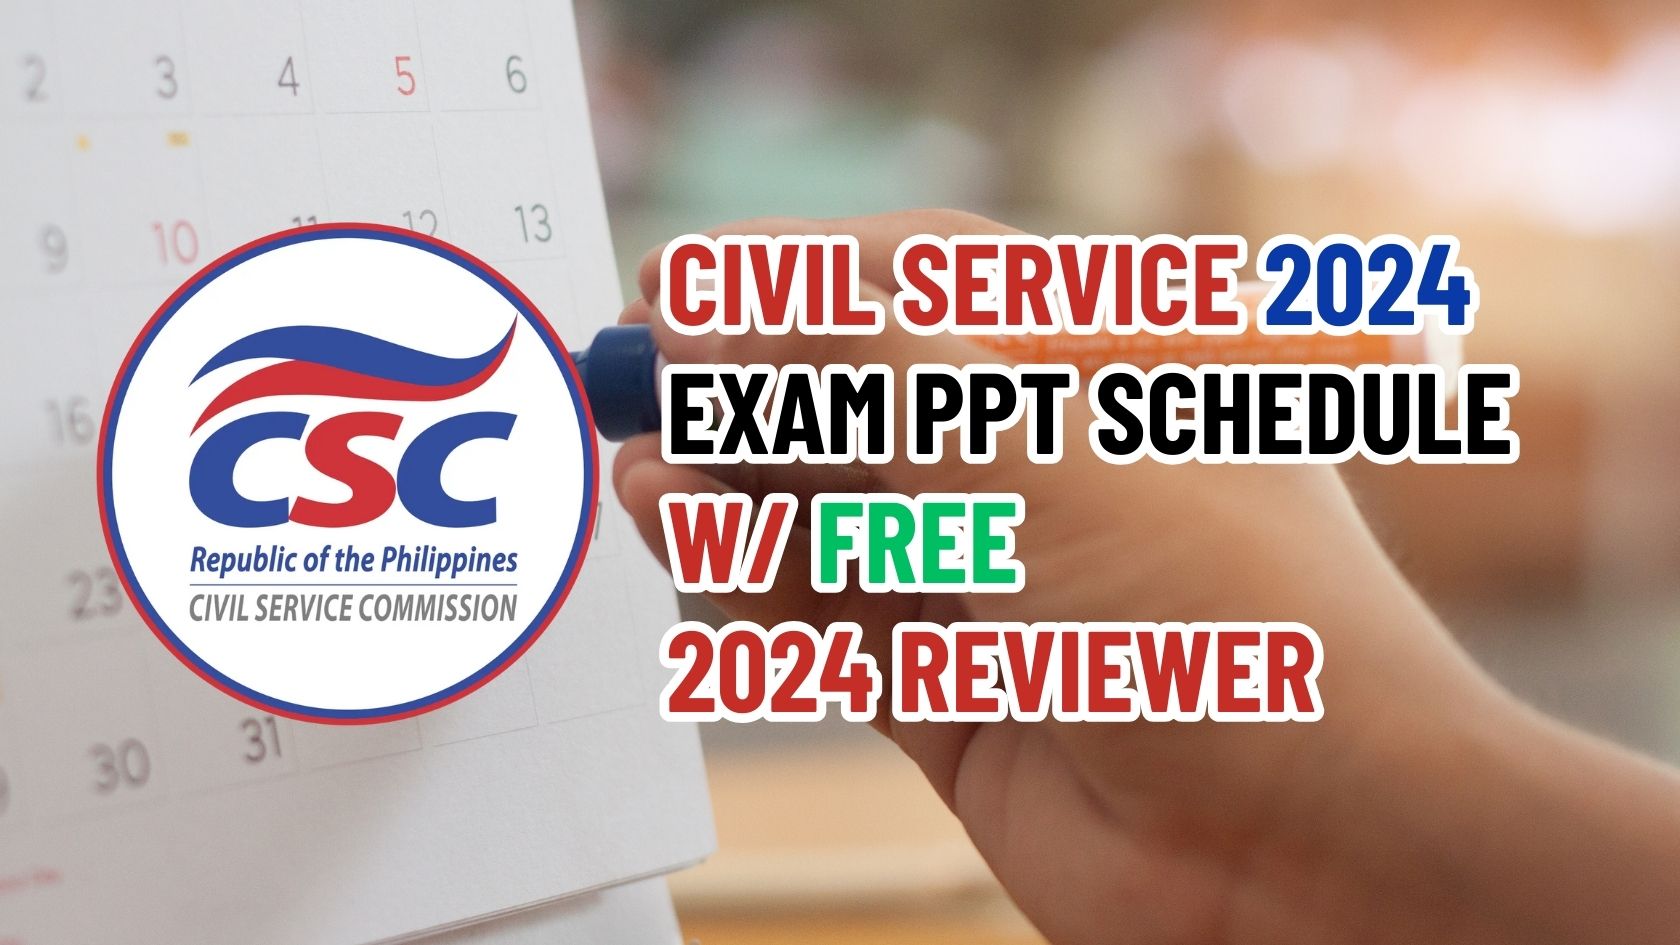 Civil Service 2024 Exam PPT Schedule Philippine Exam Reviewer